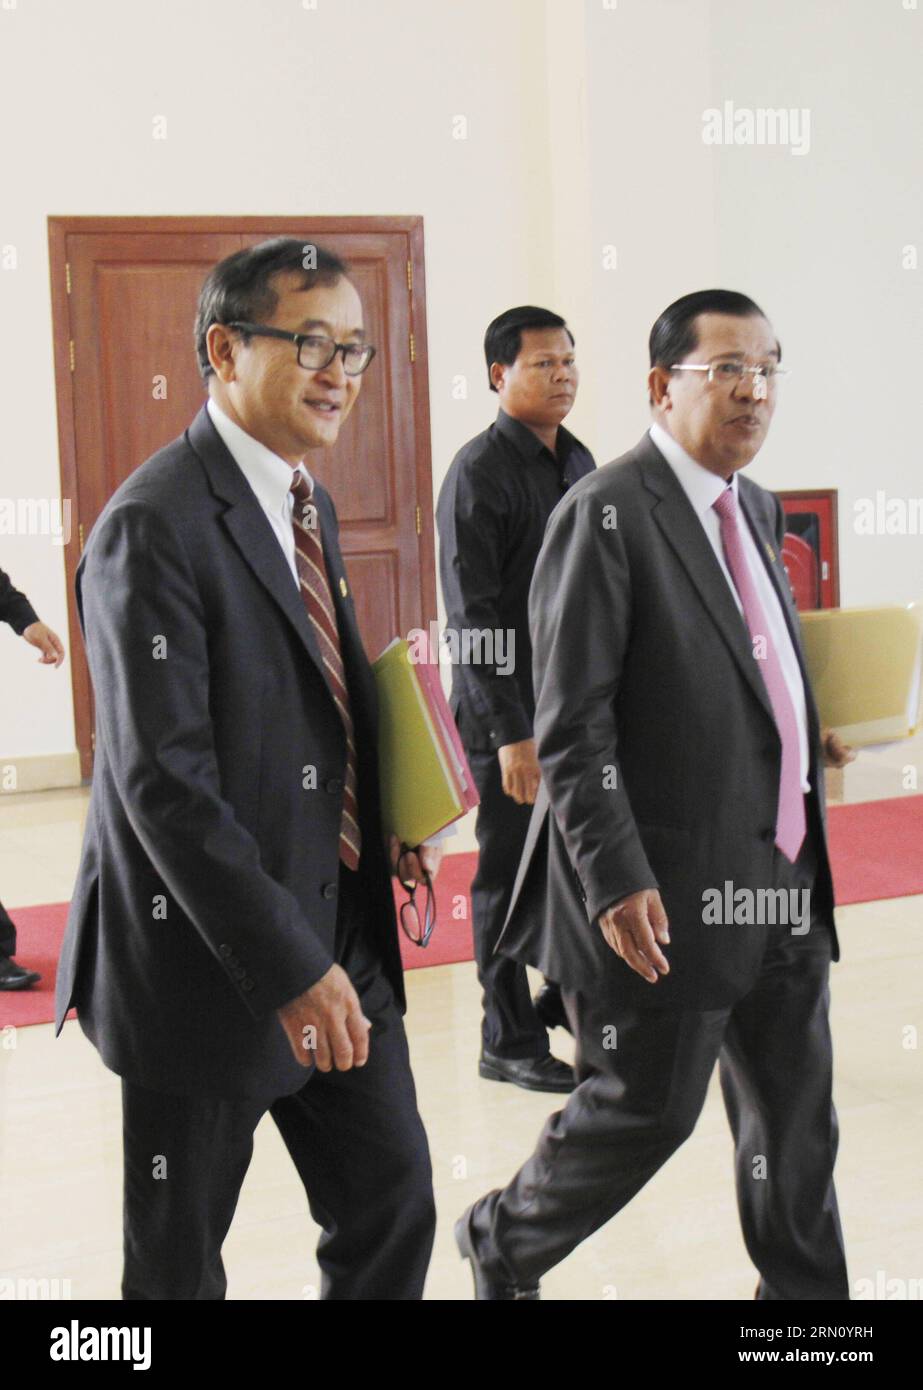 (141128) -- PHNOM PENH, 28 novembre 2014 -- le Premier ministre cambodgien Hun Sen (à droite), également vice-président du Parti du peuple cambodgien au pouvoir, marche avec Sam Rainsy (à gauche), président du Parti de secours national du Cambodge, parti d'opposition, à Phnom Penh, Cambodge, le 28 novembre 2014. Hun Sen a rencontré Sam Rainsy vendredi pour trouver des solutions aux problèmes restants après que les deux dirigeants ont convenu en juillet de mettre fin à leurs divergences lors des élections de l an dernier. CAMBODGE-PHNOM PENH-PM-LEADER DE L'OPPOSITION-RÉUNION Sovannara PUBLICATIONxNOTxINxCHN Phnom Penh novembre 28 2014 les premiers ministres cambodgiens HUN Sen r donc vice-président Banque D'Images